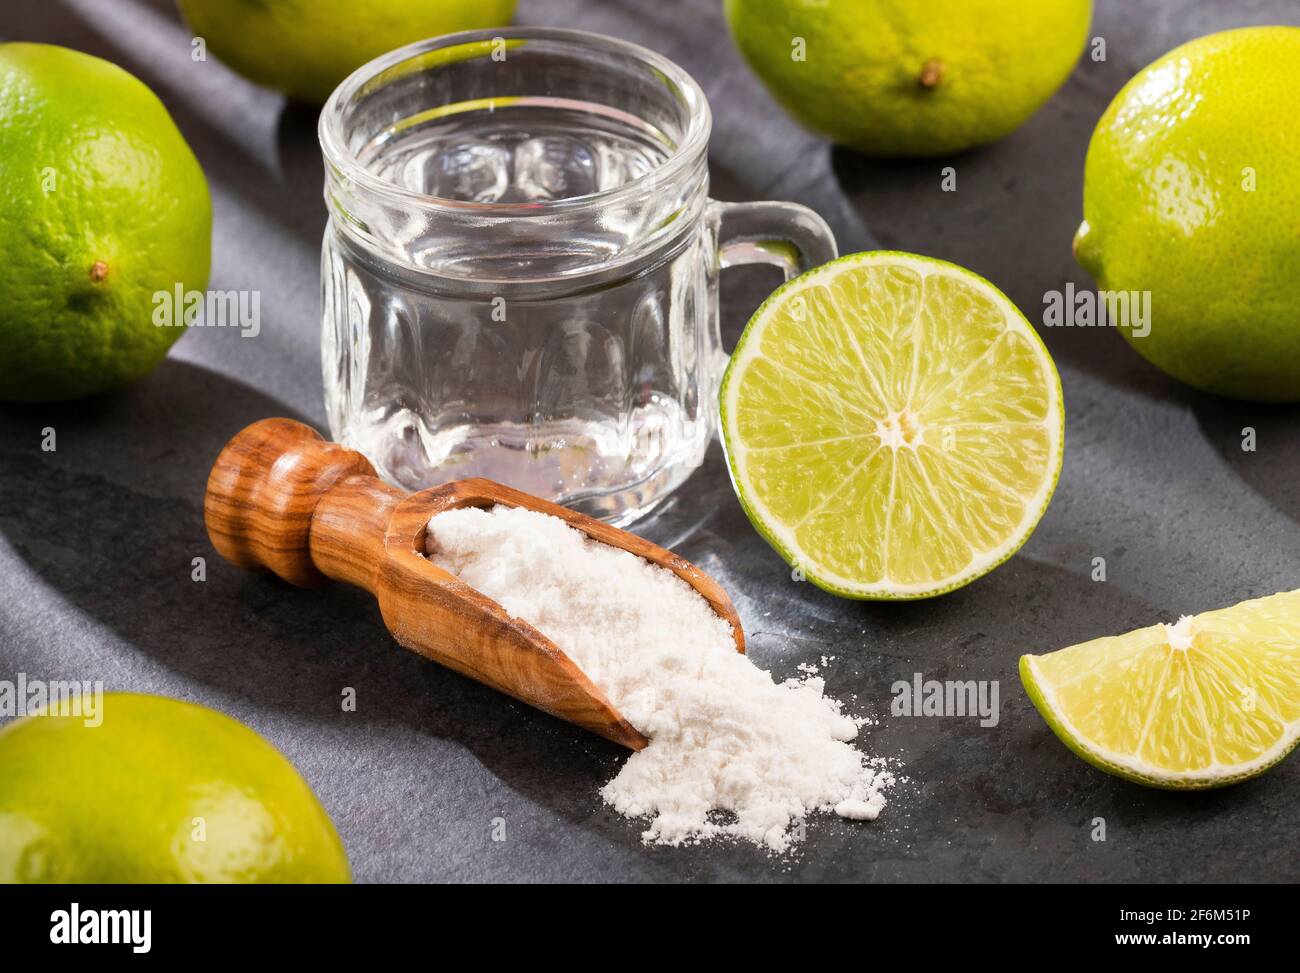 Сода лимон вода отзывы. Сода с лимоном и водой. Сода и лимонный сок. Чайни сода лимон. Фото вода лимон и сода.